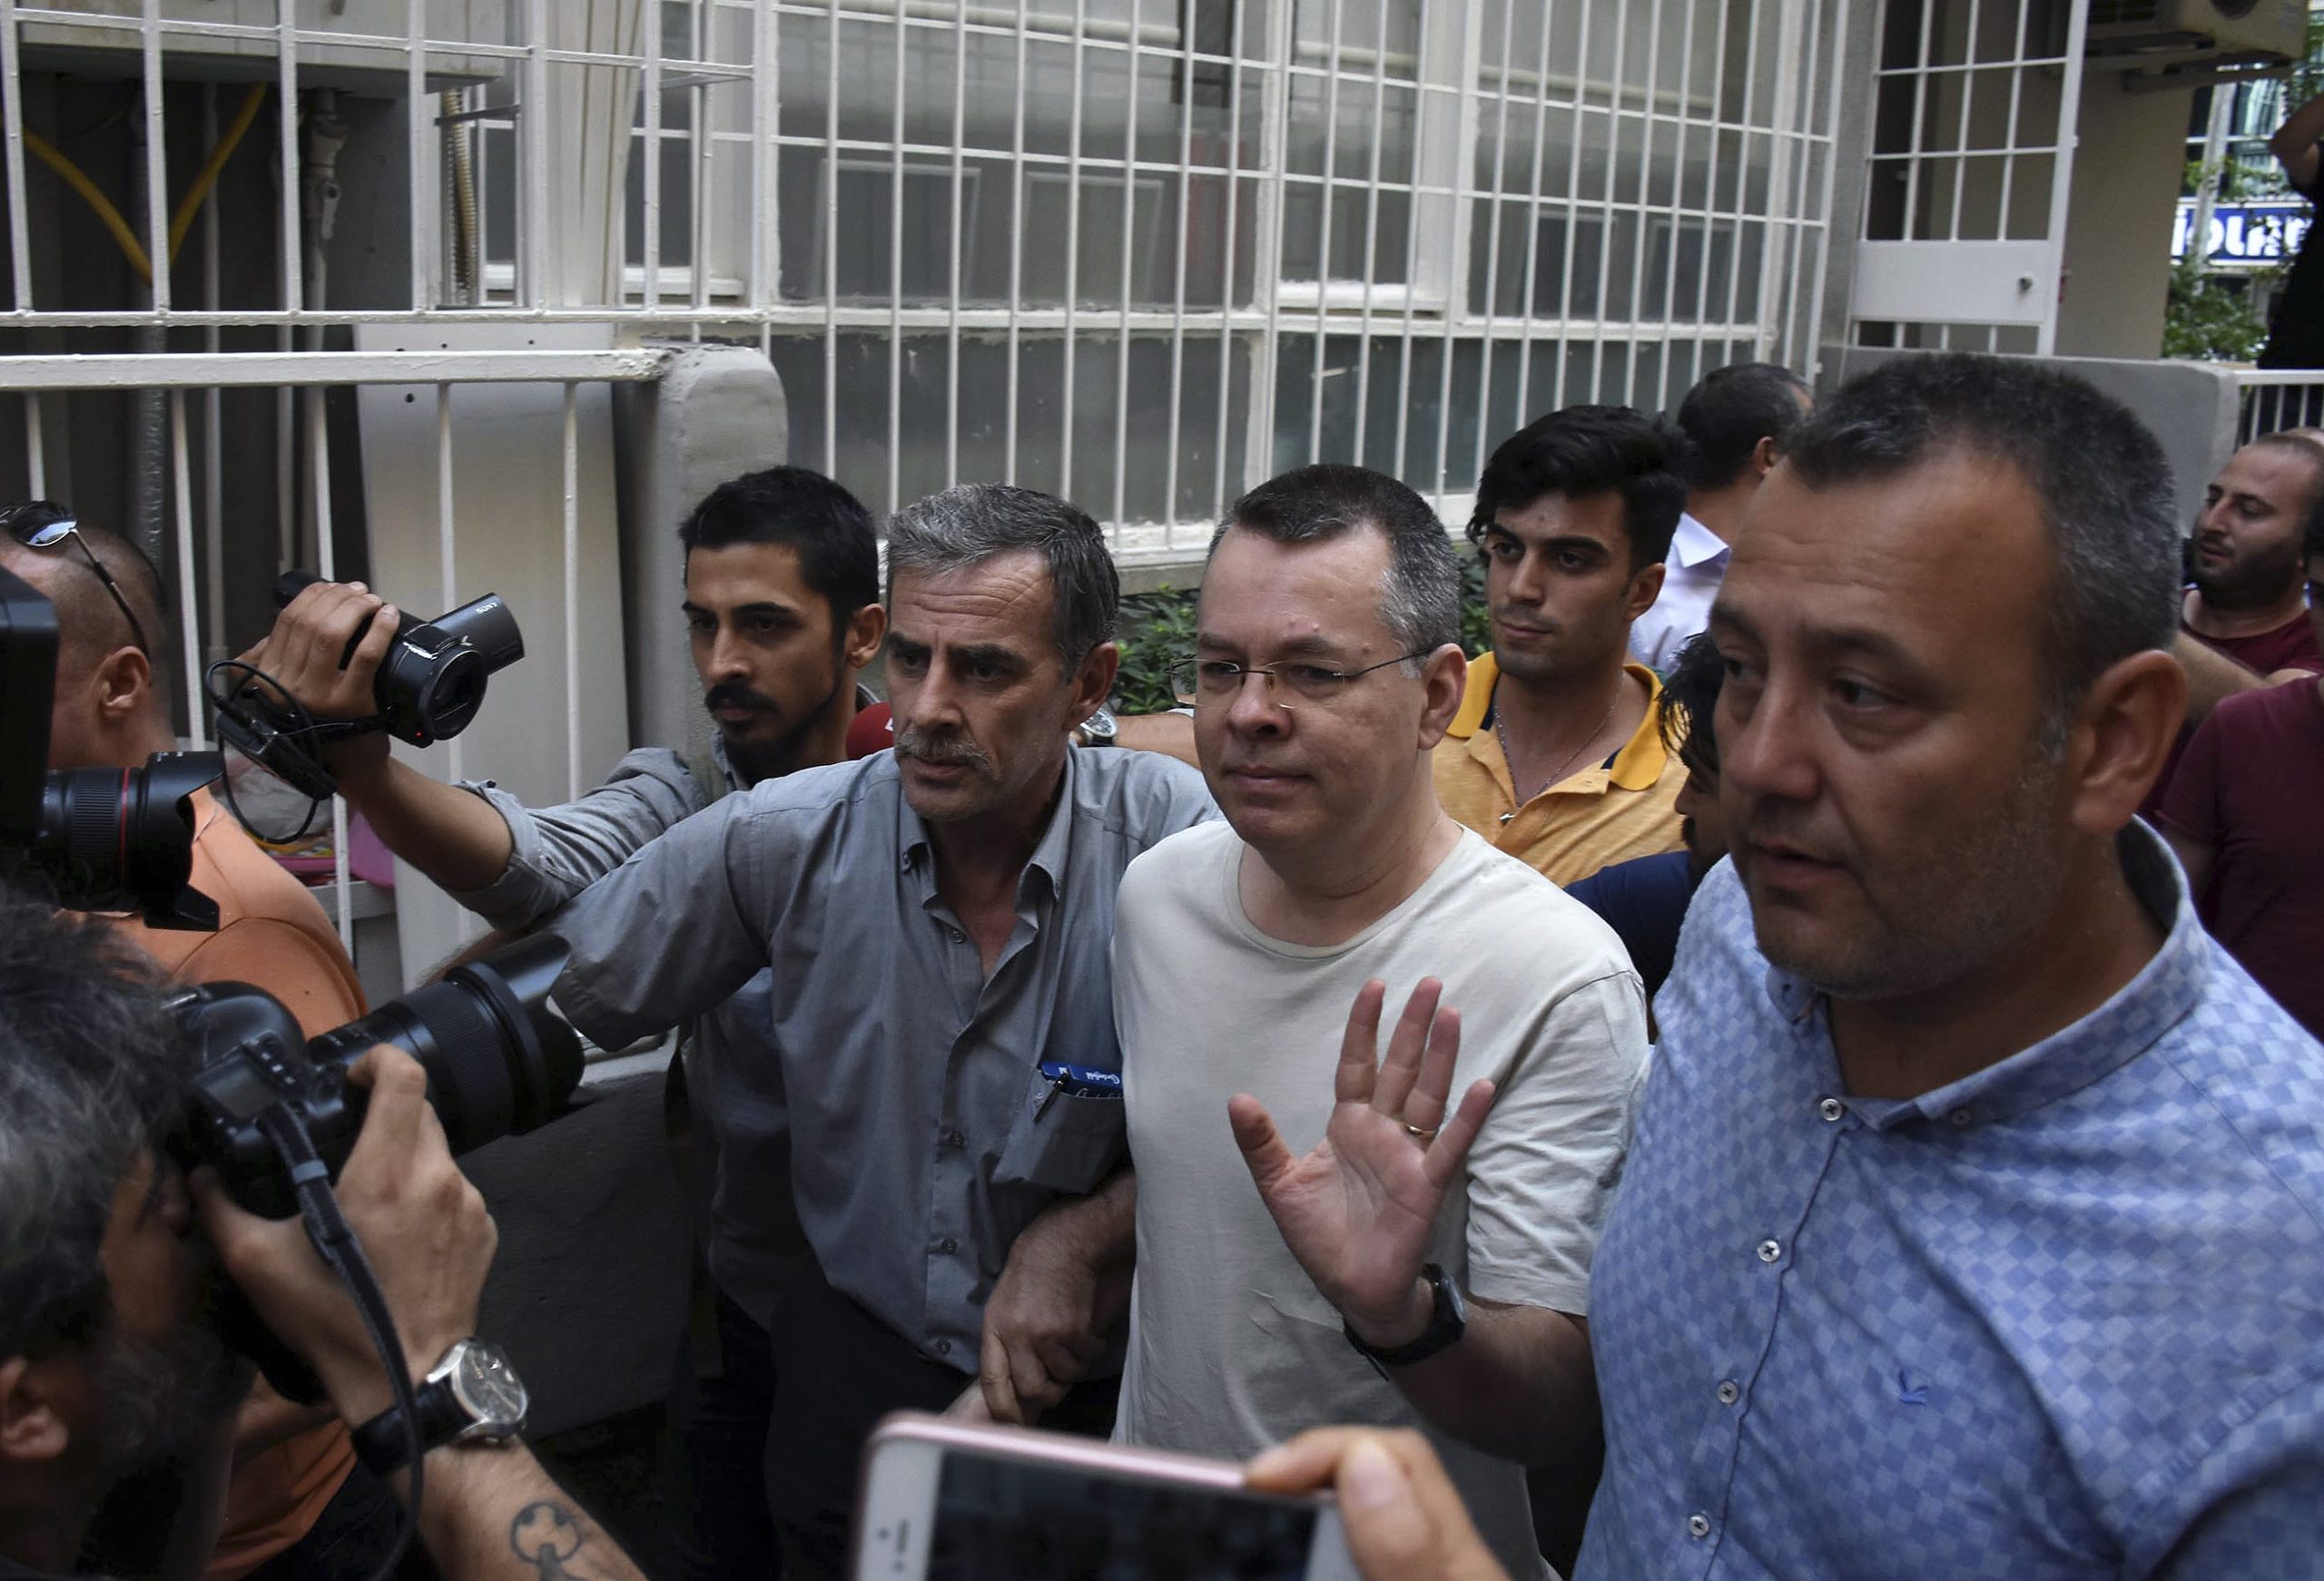 Θα τον απελευθερώσει ο Ρ.Τ.Ερντογάν; Στα δικαστήρια προσφεύγει ξανά ο Αμερικανός πάστορας